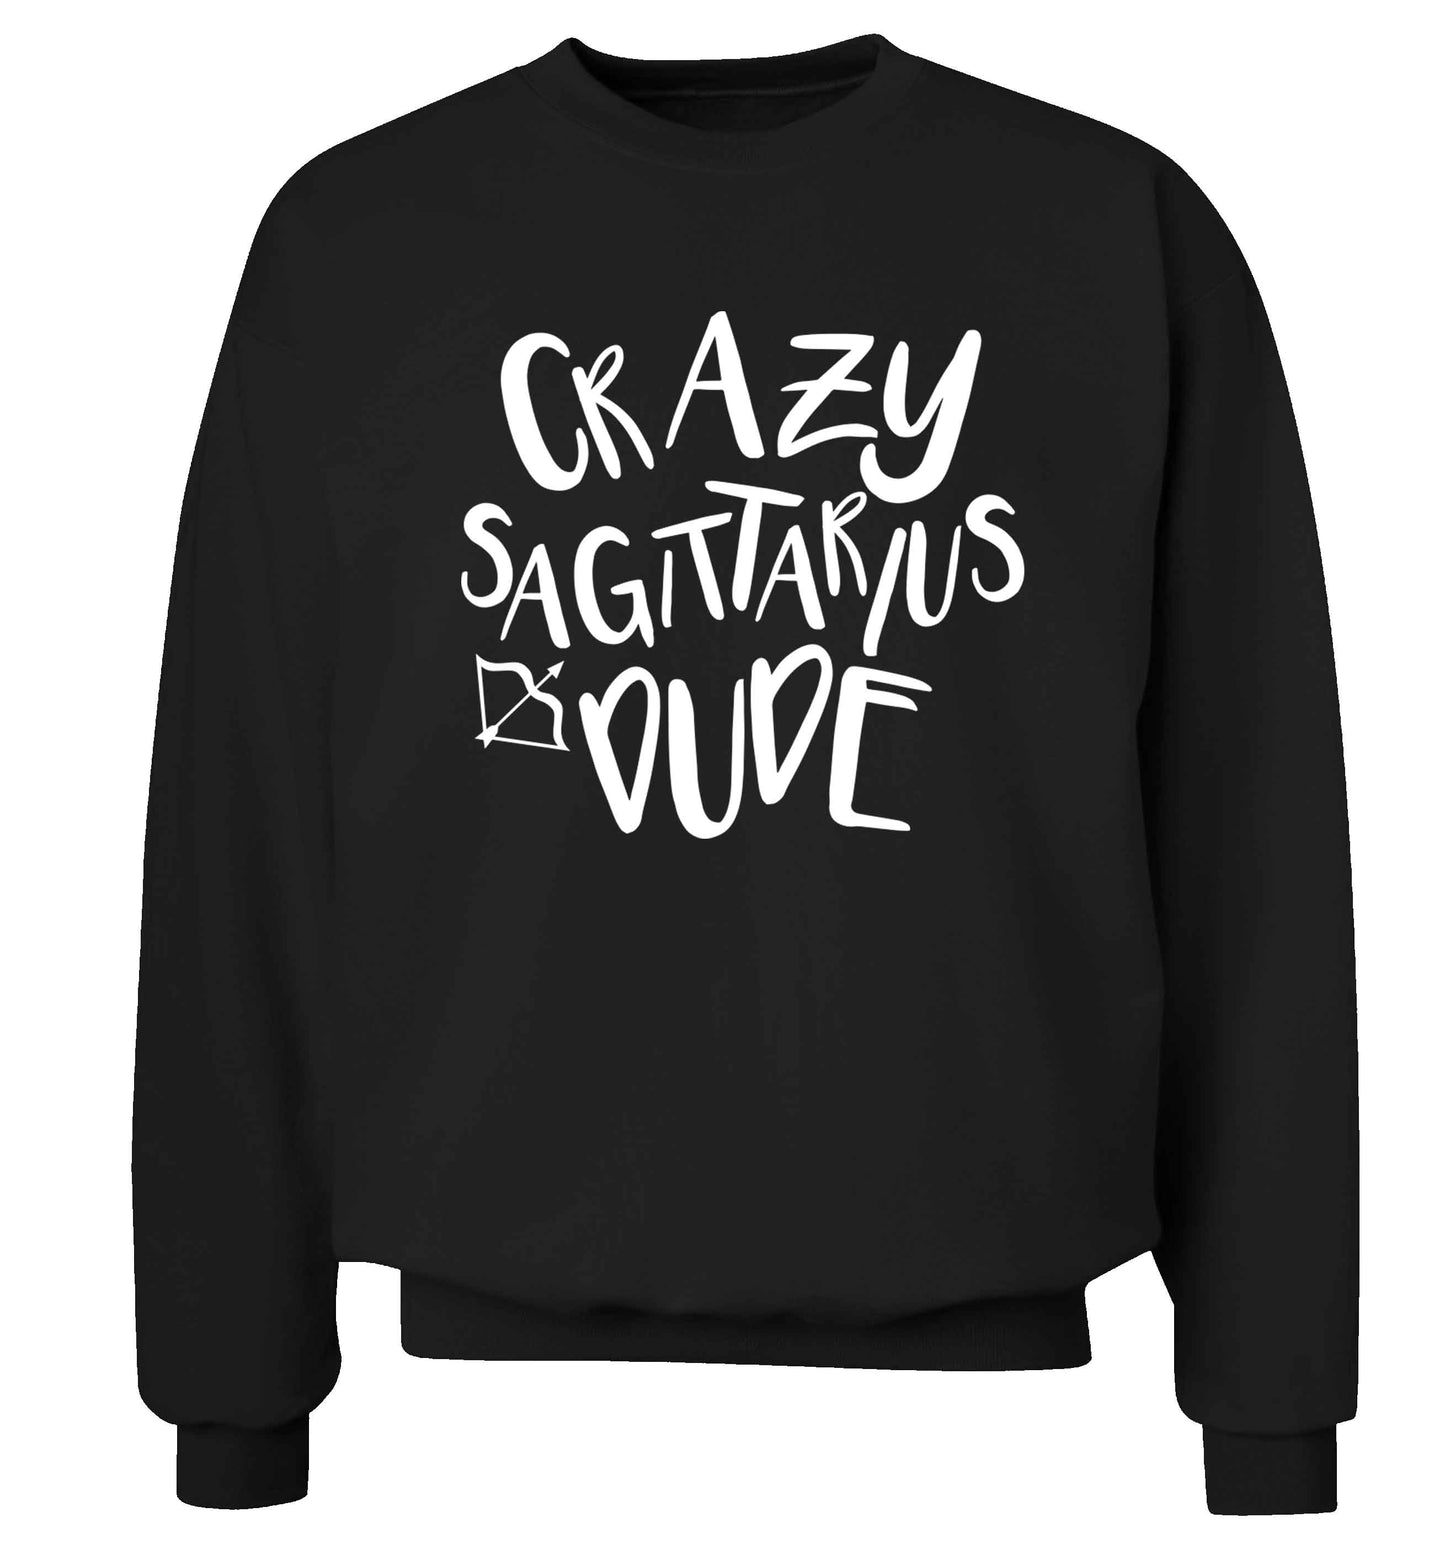 Crazy sagittarius dude Adult's unisex black Sweater 2XL